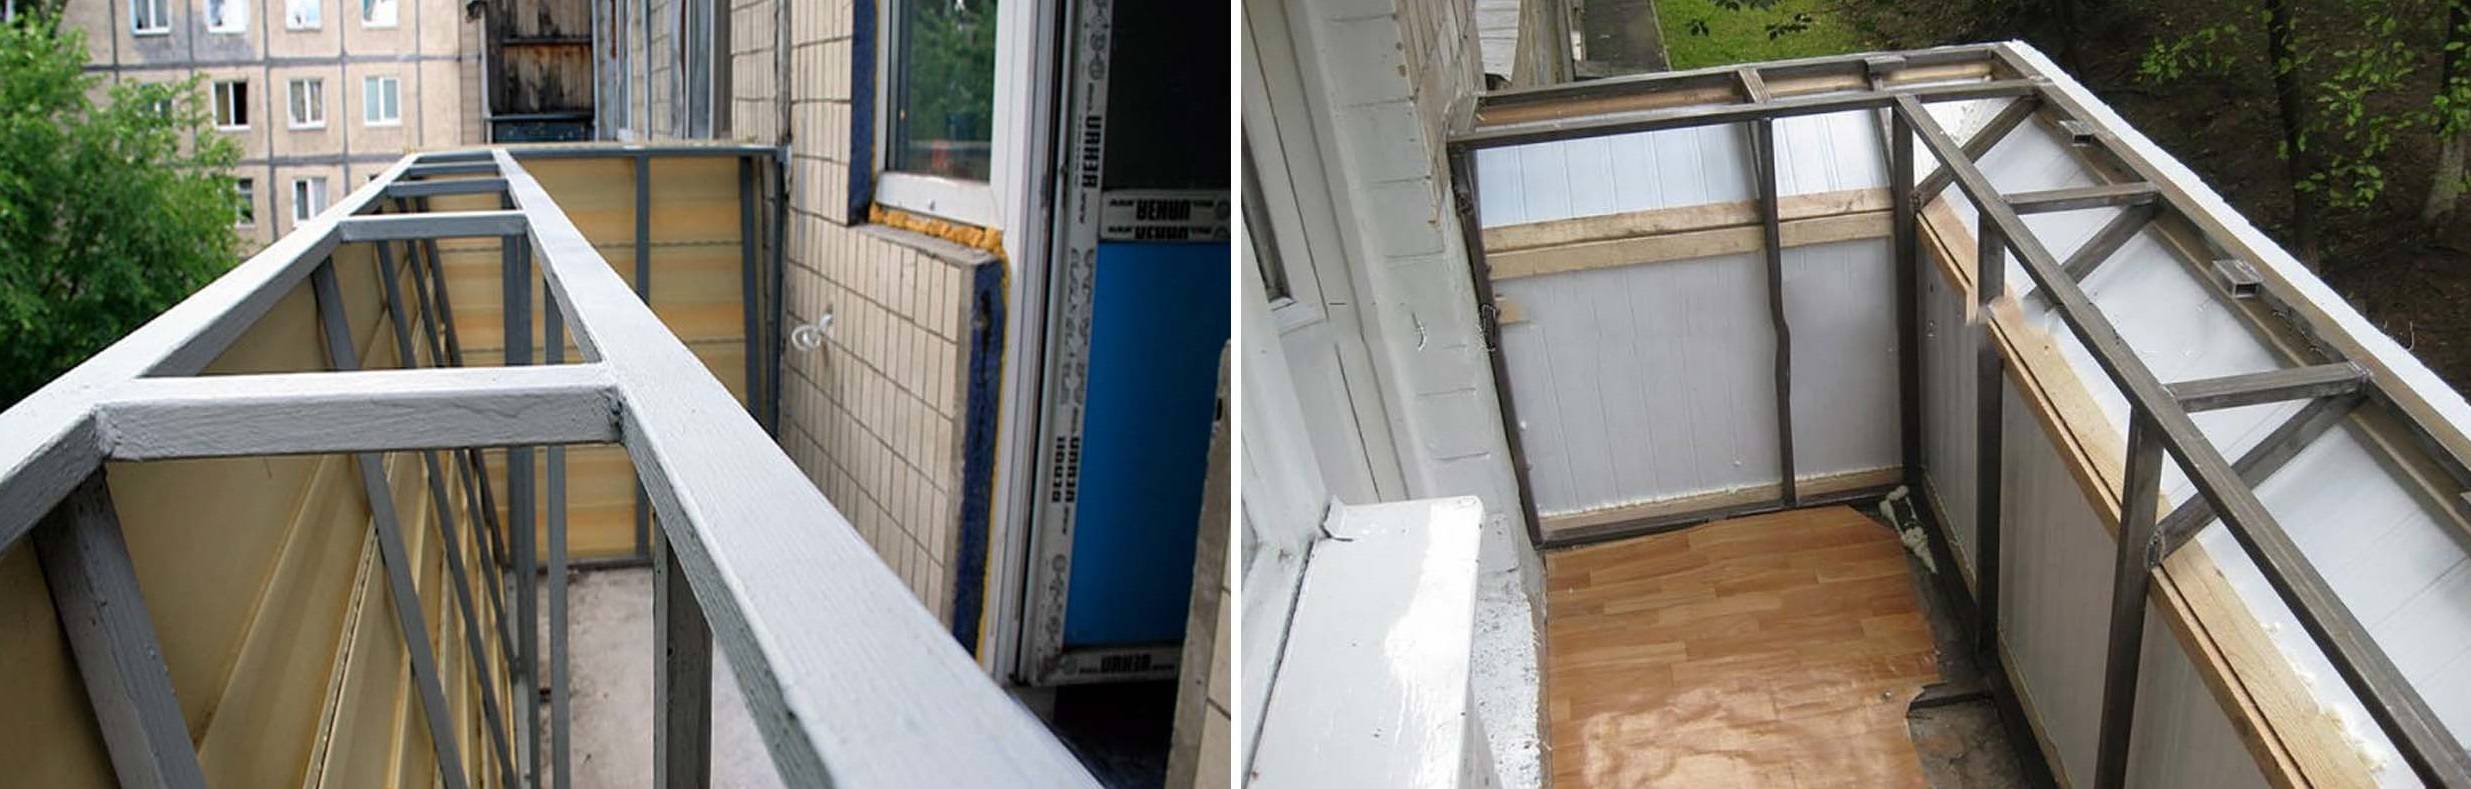 Утепление алюминиевых окон: какие способы используют для теплоизоляции в квартире или доме, инструкция по монтажу